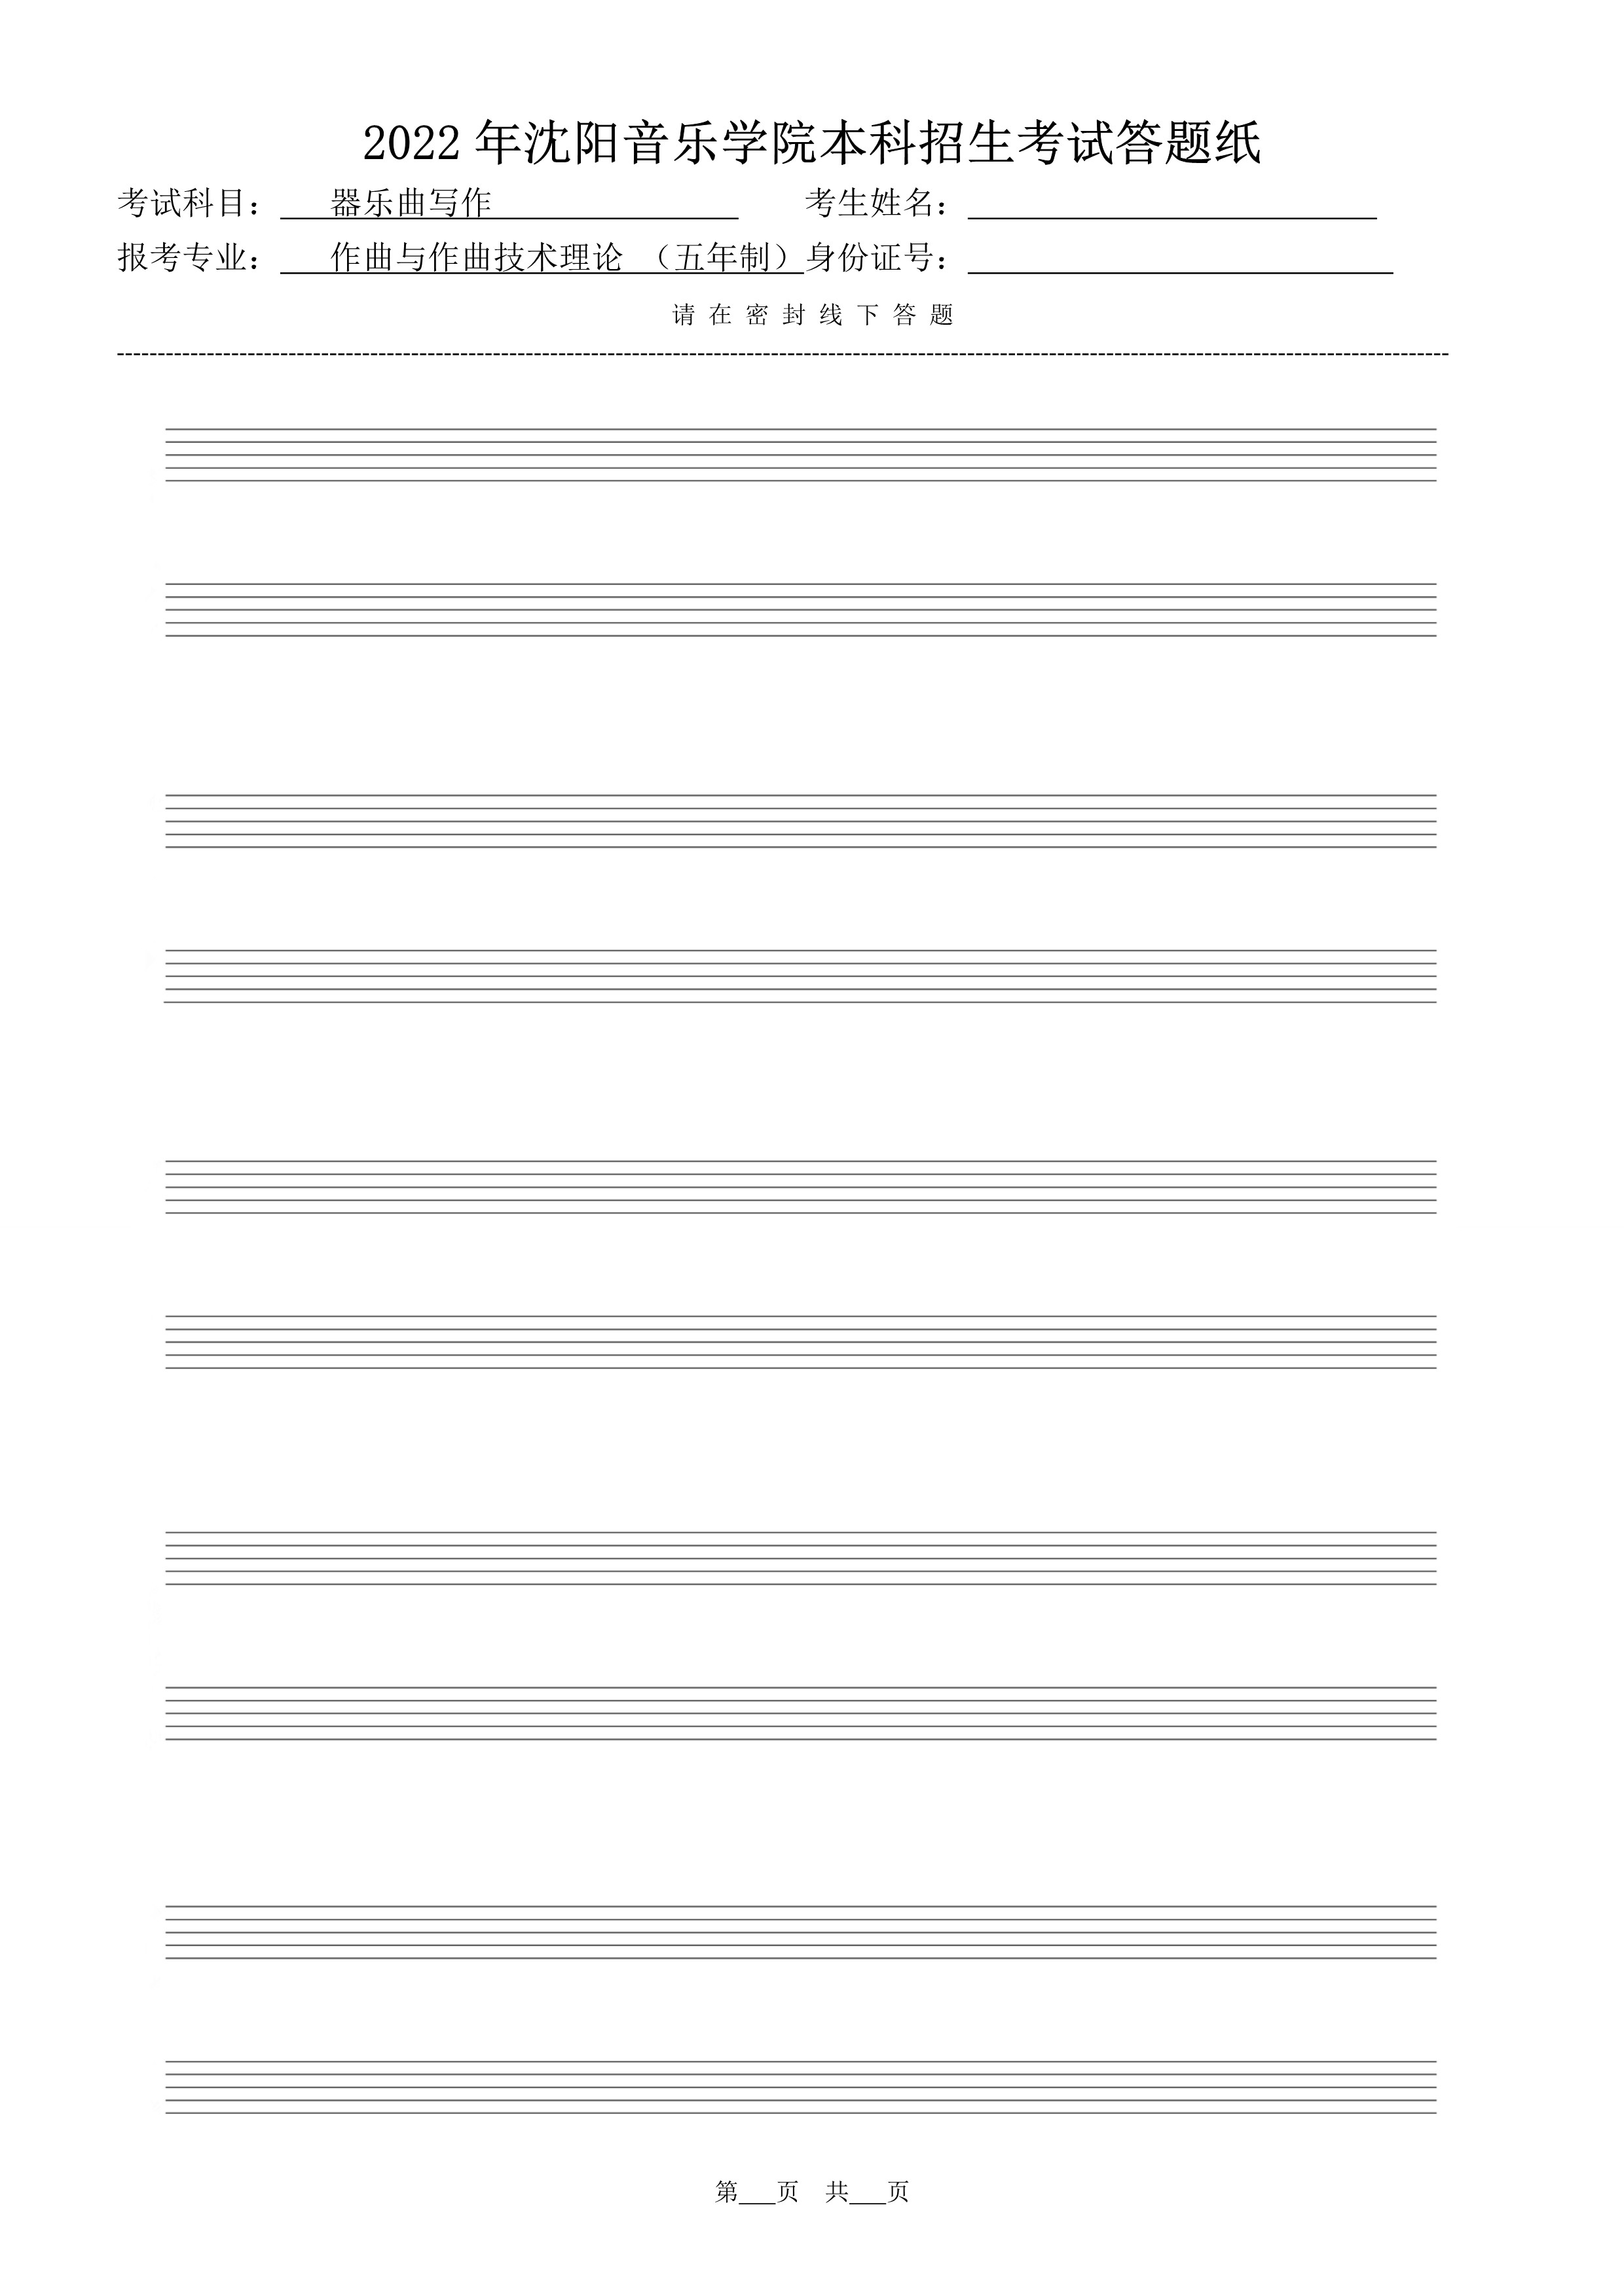 复试器乐曲写作答题纸（共10张）_6.jpg